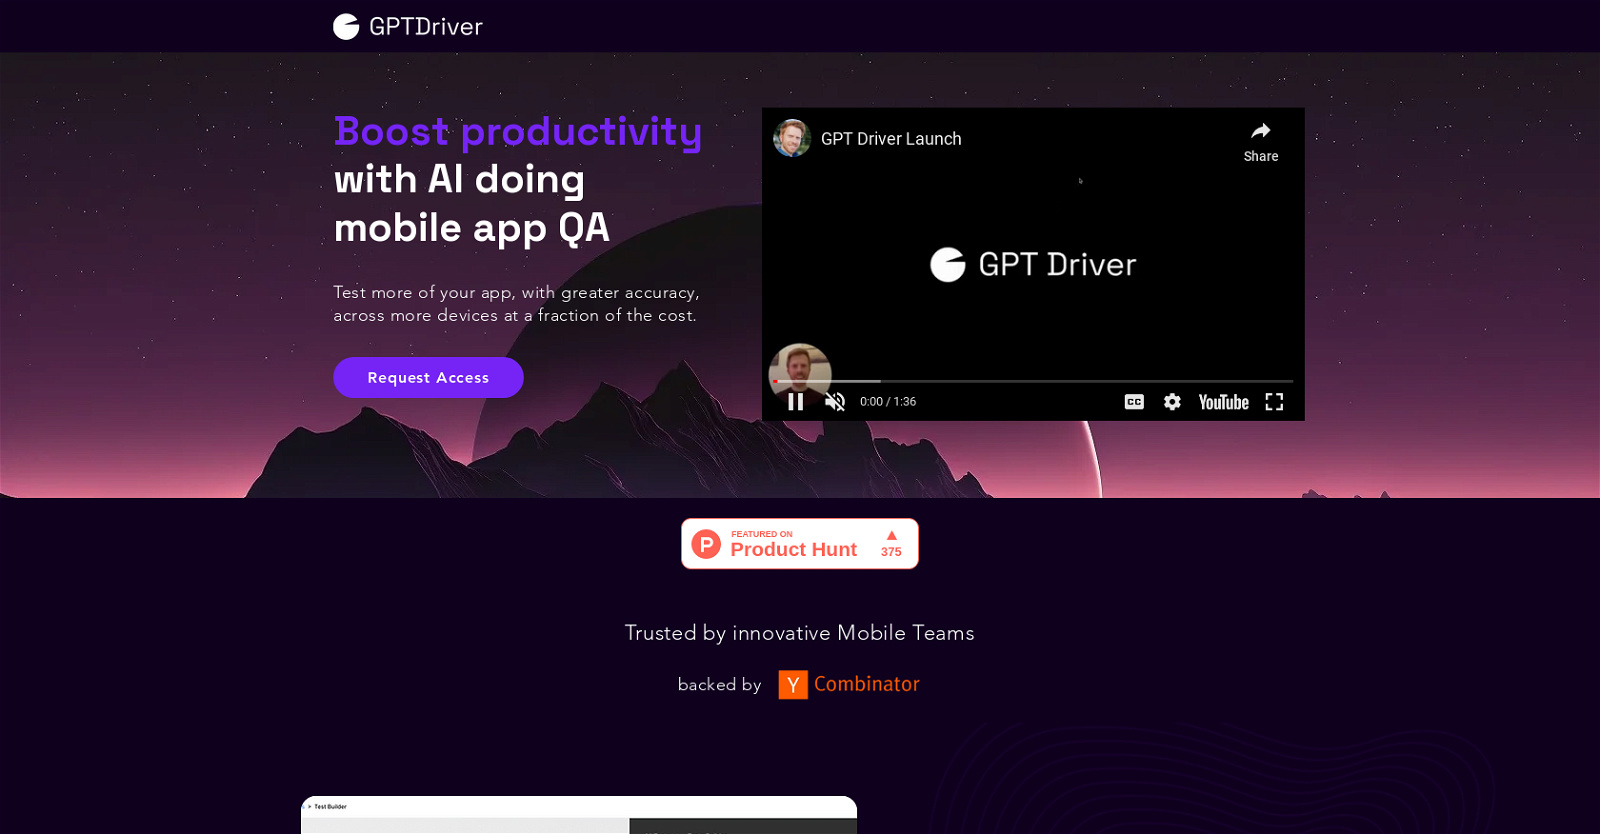 GPT Driver website